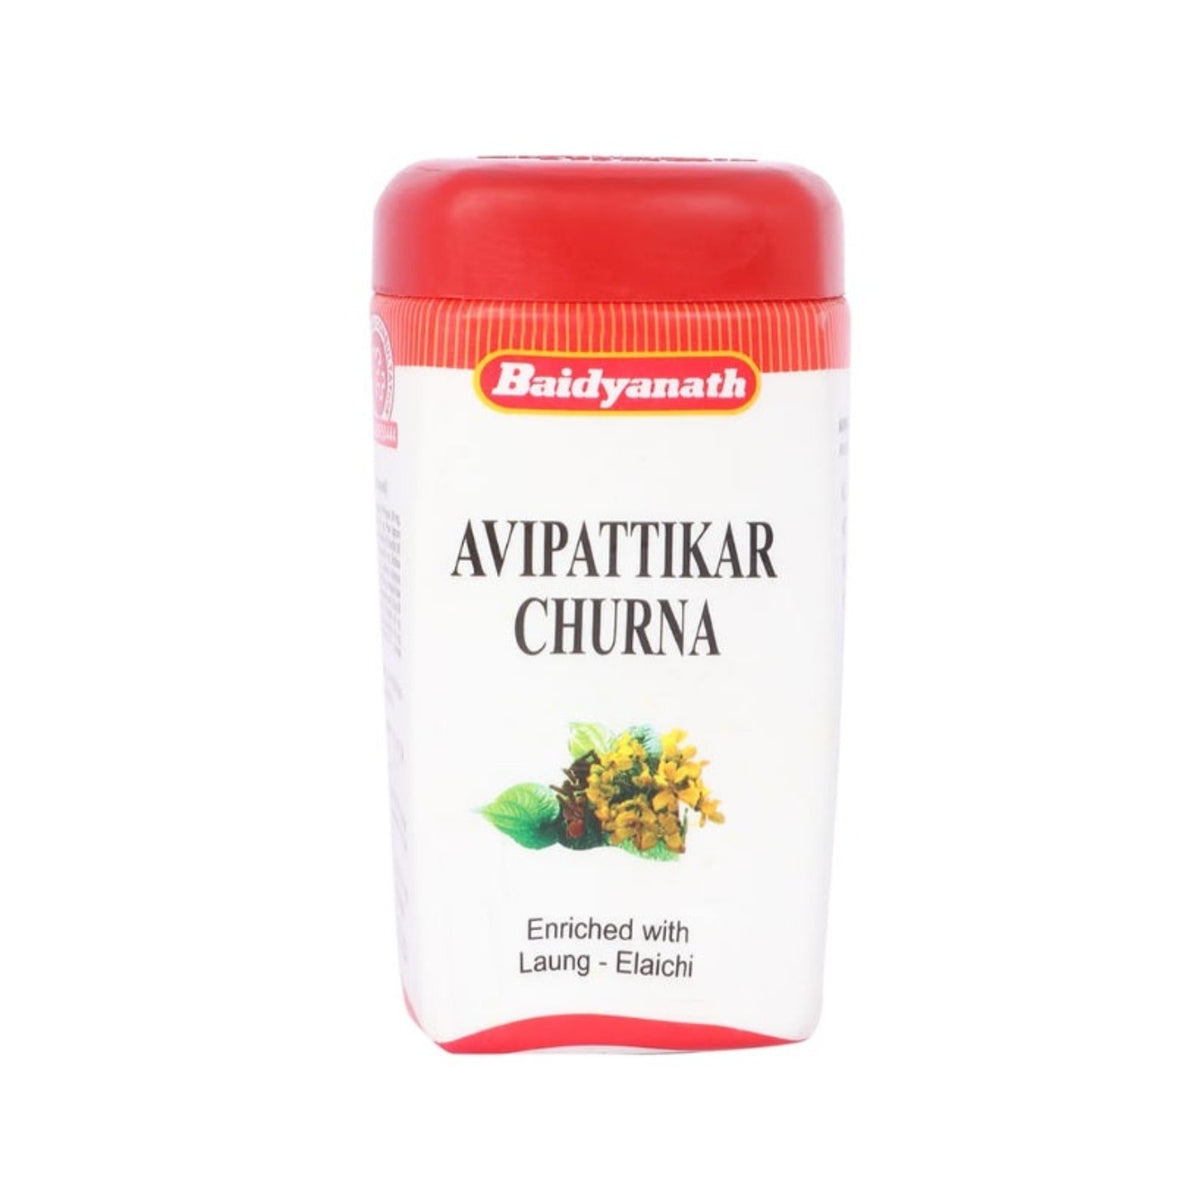 Baidyanath Ayurvedic Avipattikar Churna Powder